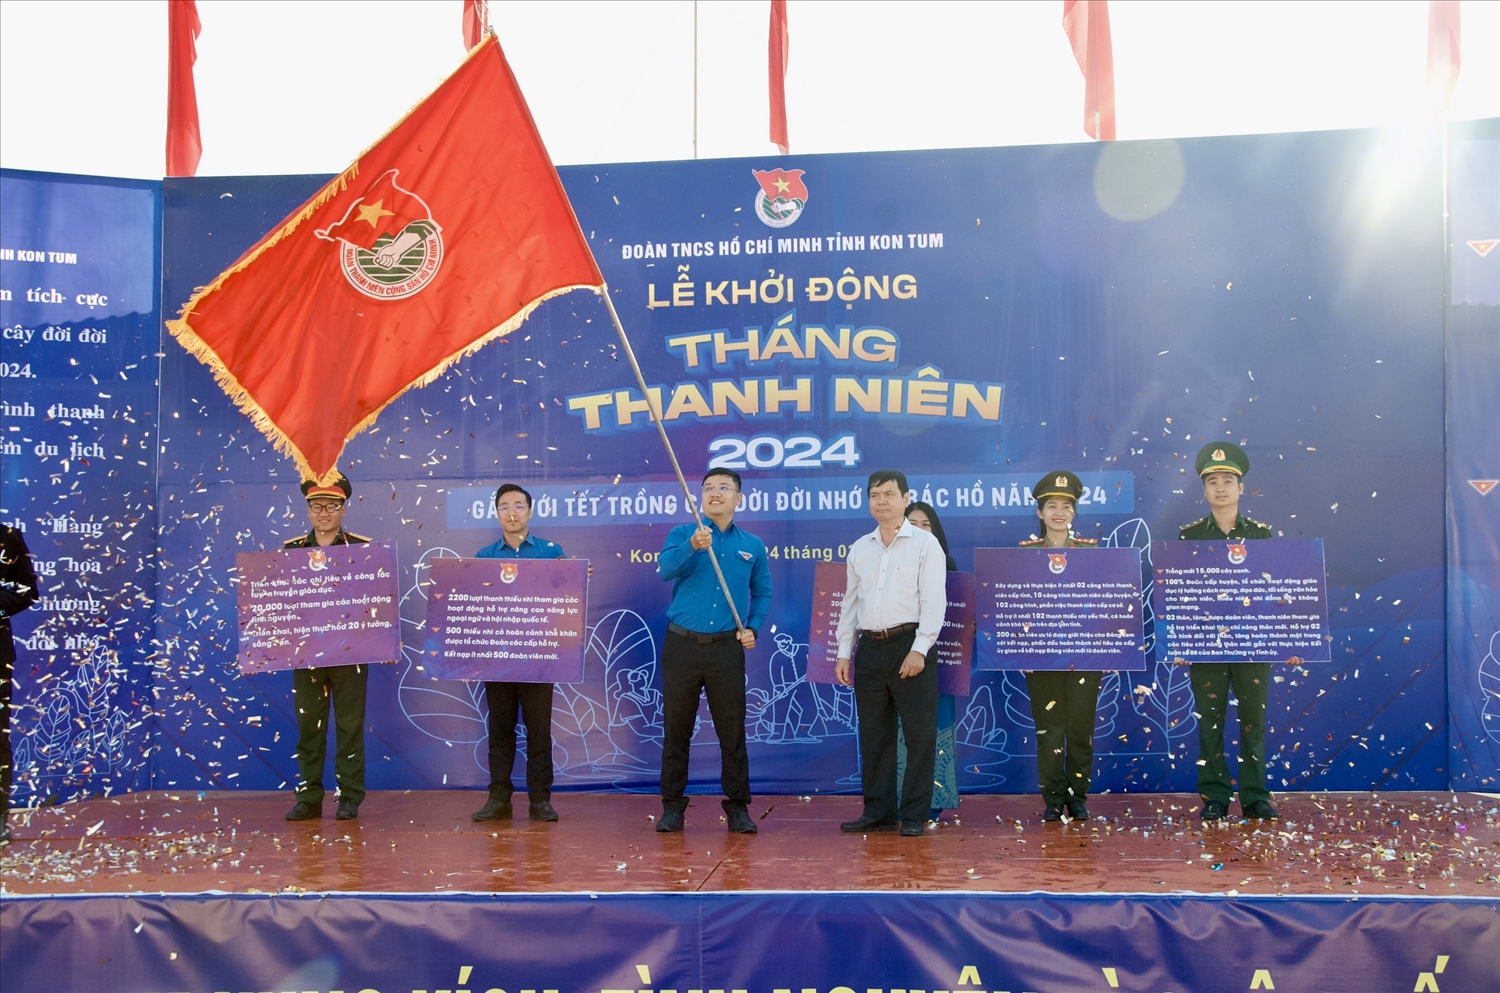 Lãnh đạo UBND tỉnh trao cờ phát động Tháng Thanh niên cho tuổi trẻ tỉnh Kon Tum